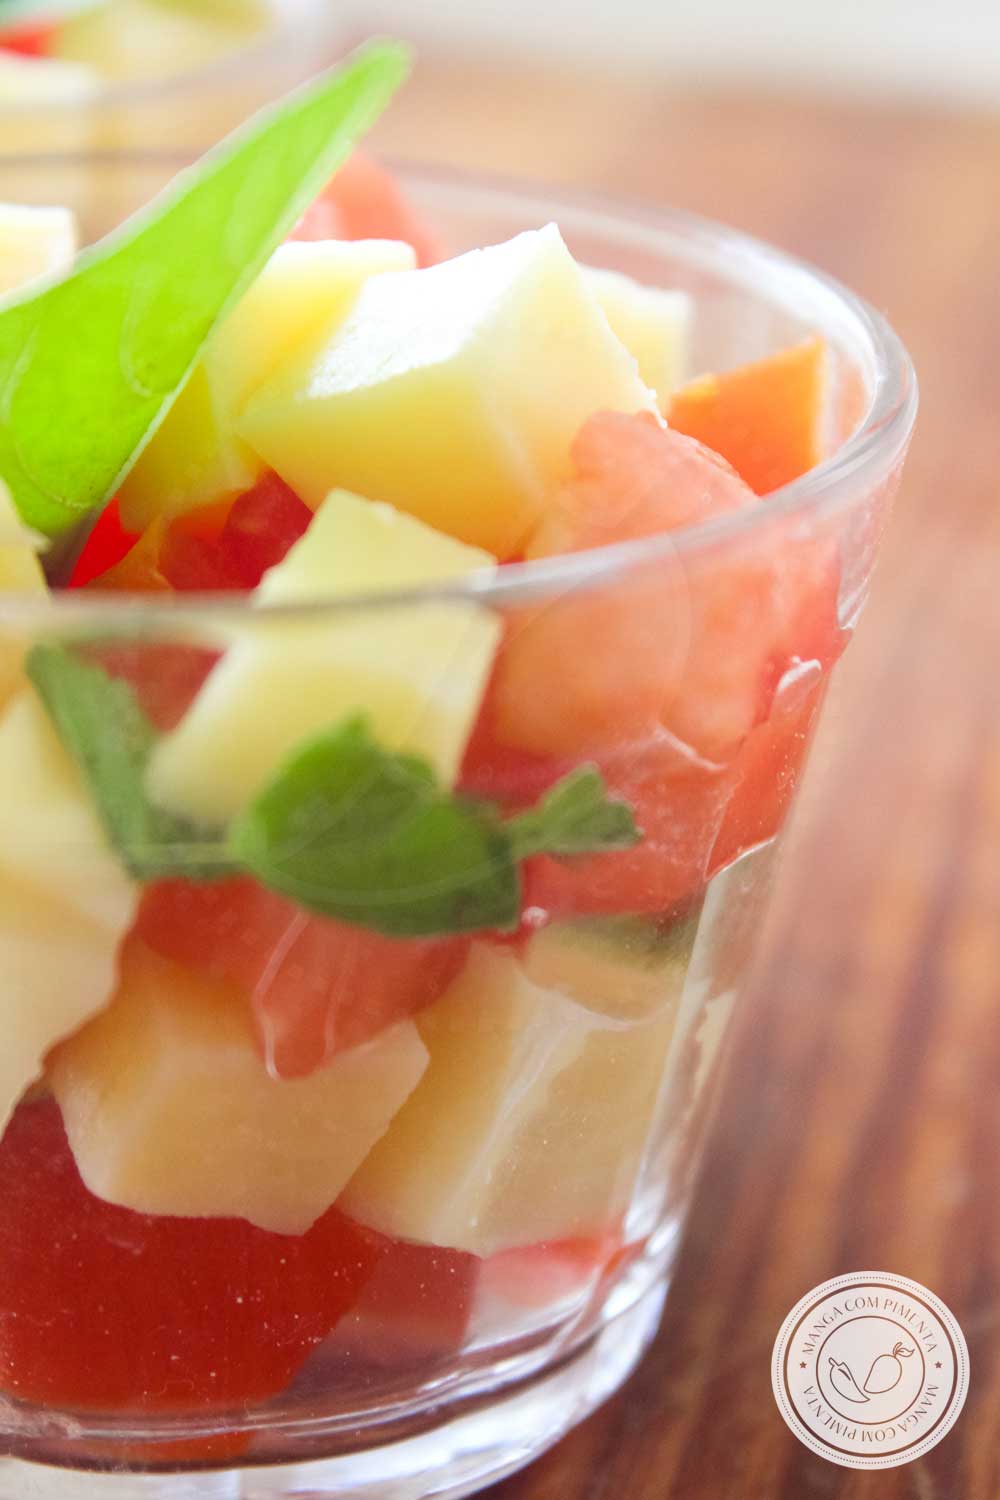 Receita de Salada Caprese no Copinho - um prato finger food para comer nos dias quentes de verão.